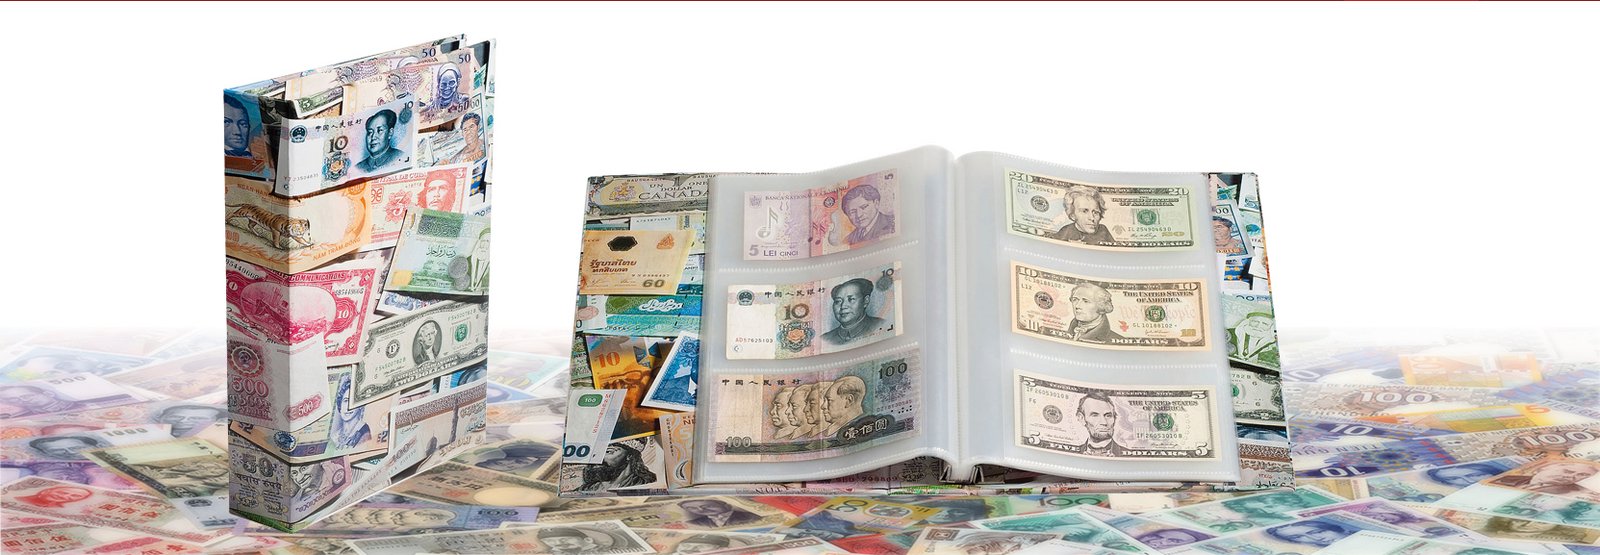 banknote-000slide001.jpg